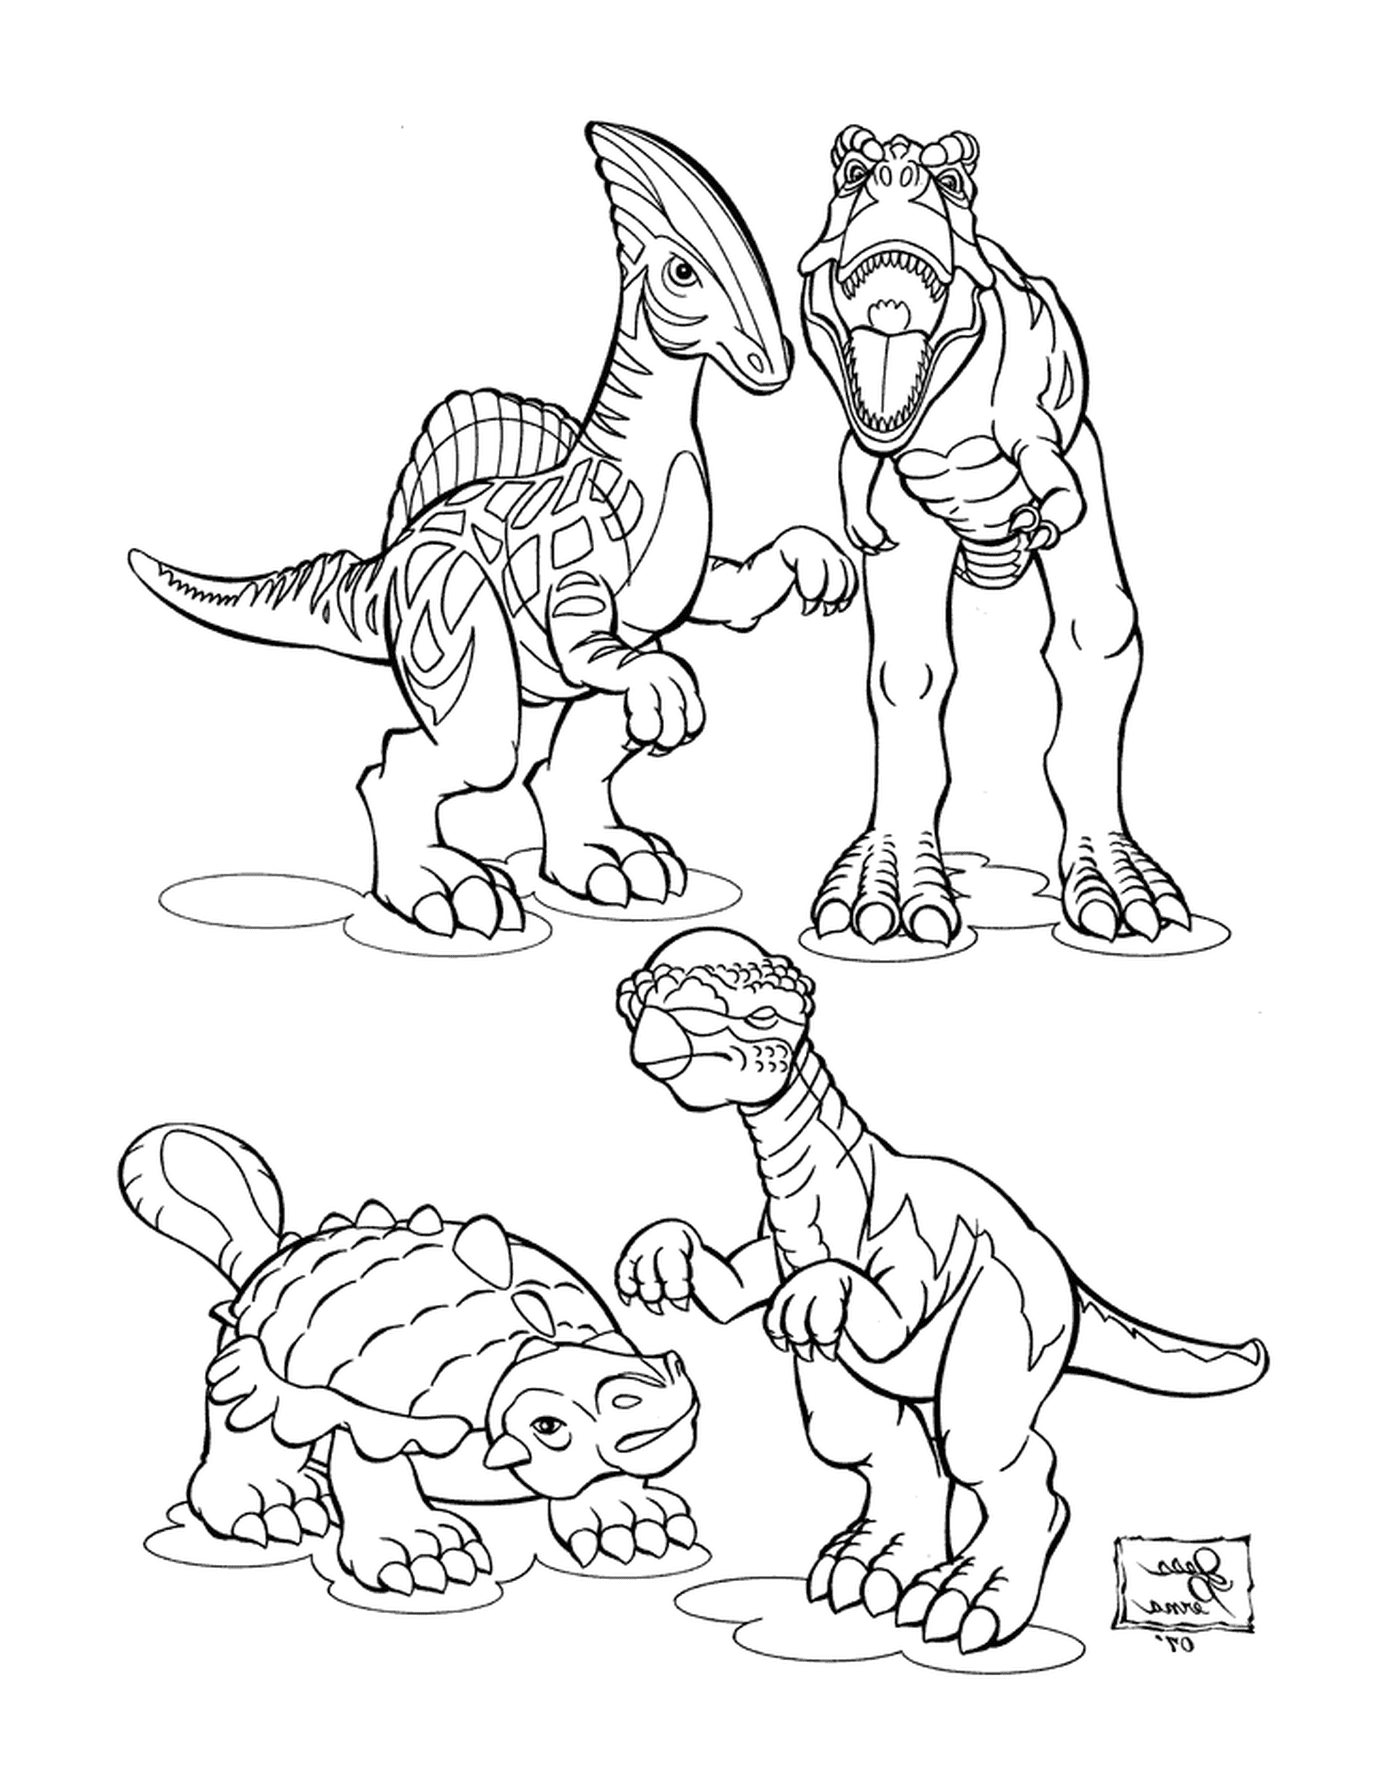  Gruppe von Dinosauriern, die zusammenhalten 